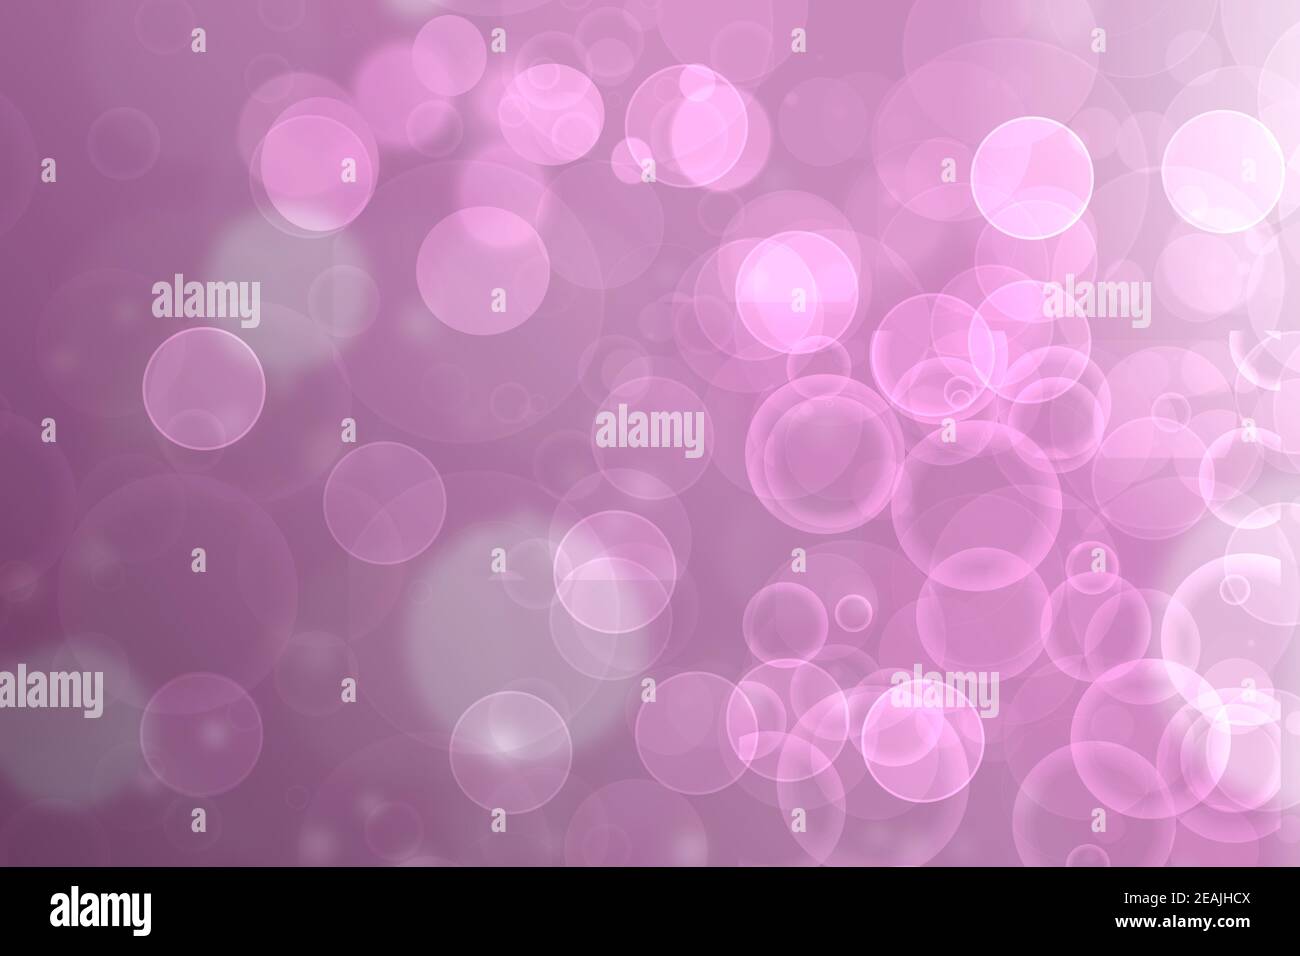 Eine festliche abstrakte Gradienten rosa grau silber Hintergrund Textur mit Glitter defokussierten funkeln Bokeh Kreise und Sterne. Kartenkonzept für Happy New Year, Party-Einladung, valentinstag oder andere Feiertage. Stockfoto